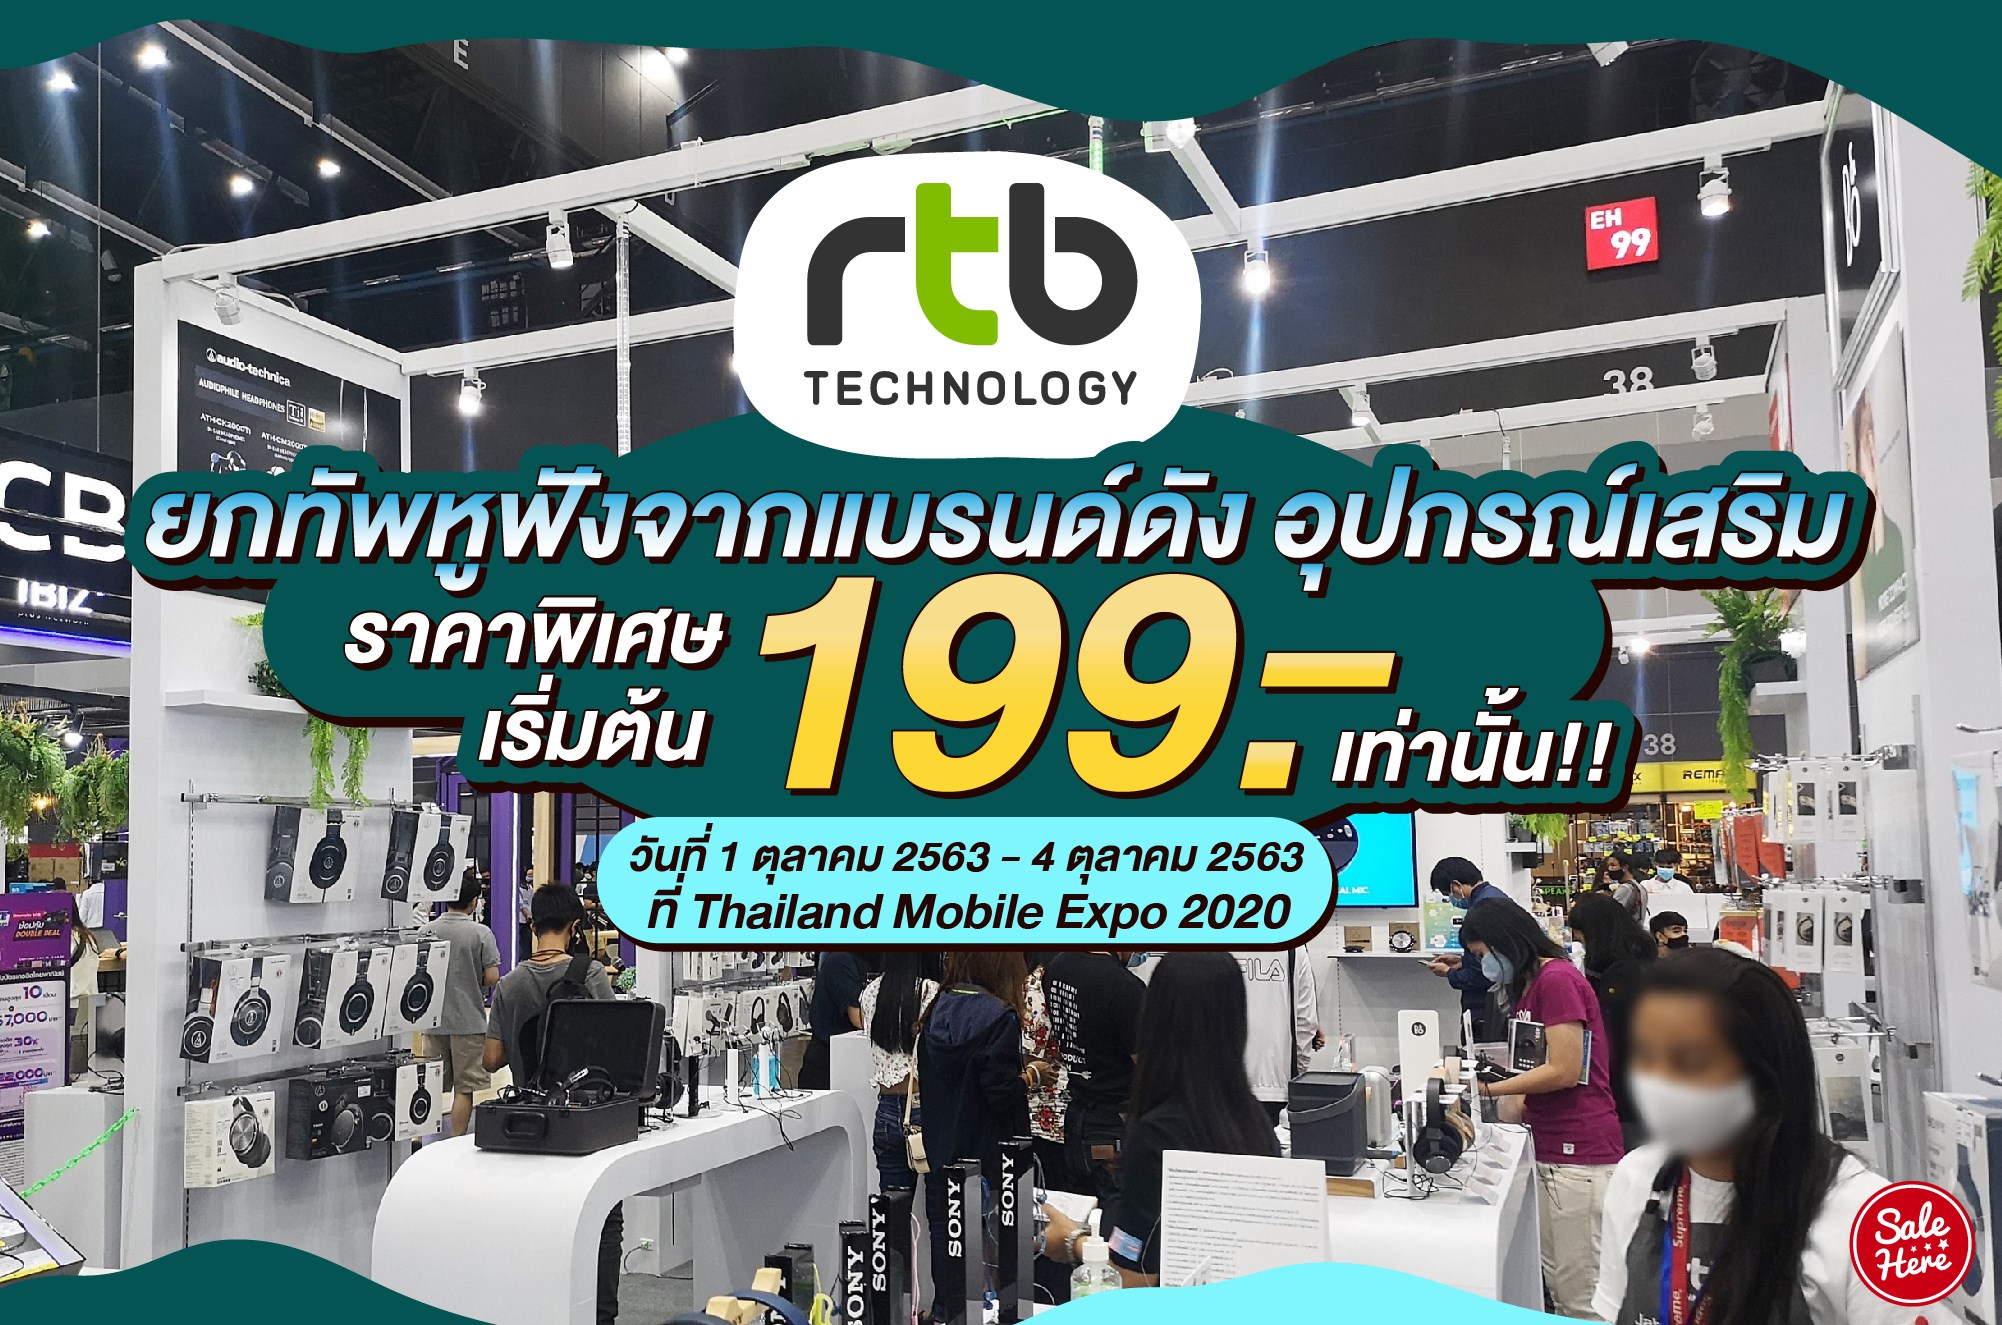 อาร์ทีบี ยกทัพหูฟังจากแบรนด์ดังร่วมงาน Thailand Mobile Expo 2020 ในระหว่างวันที่ 1-4 ตุลาคม 2020 พิเศษ.สินค้าราคาเริ่มต้นที่ 199 บาทเท่านั้น!